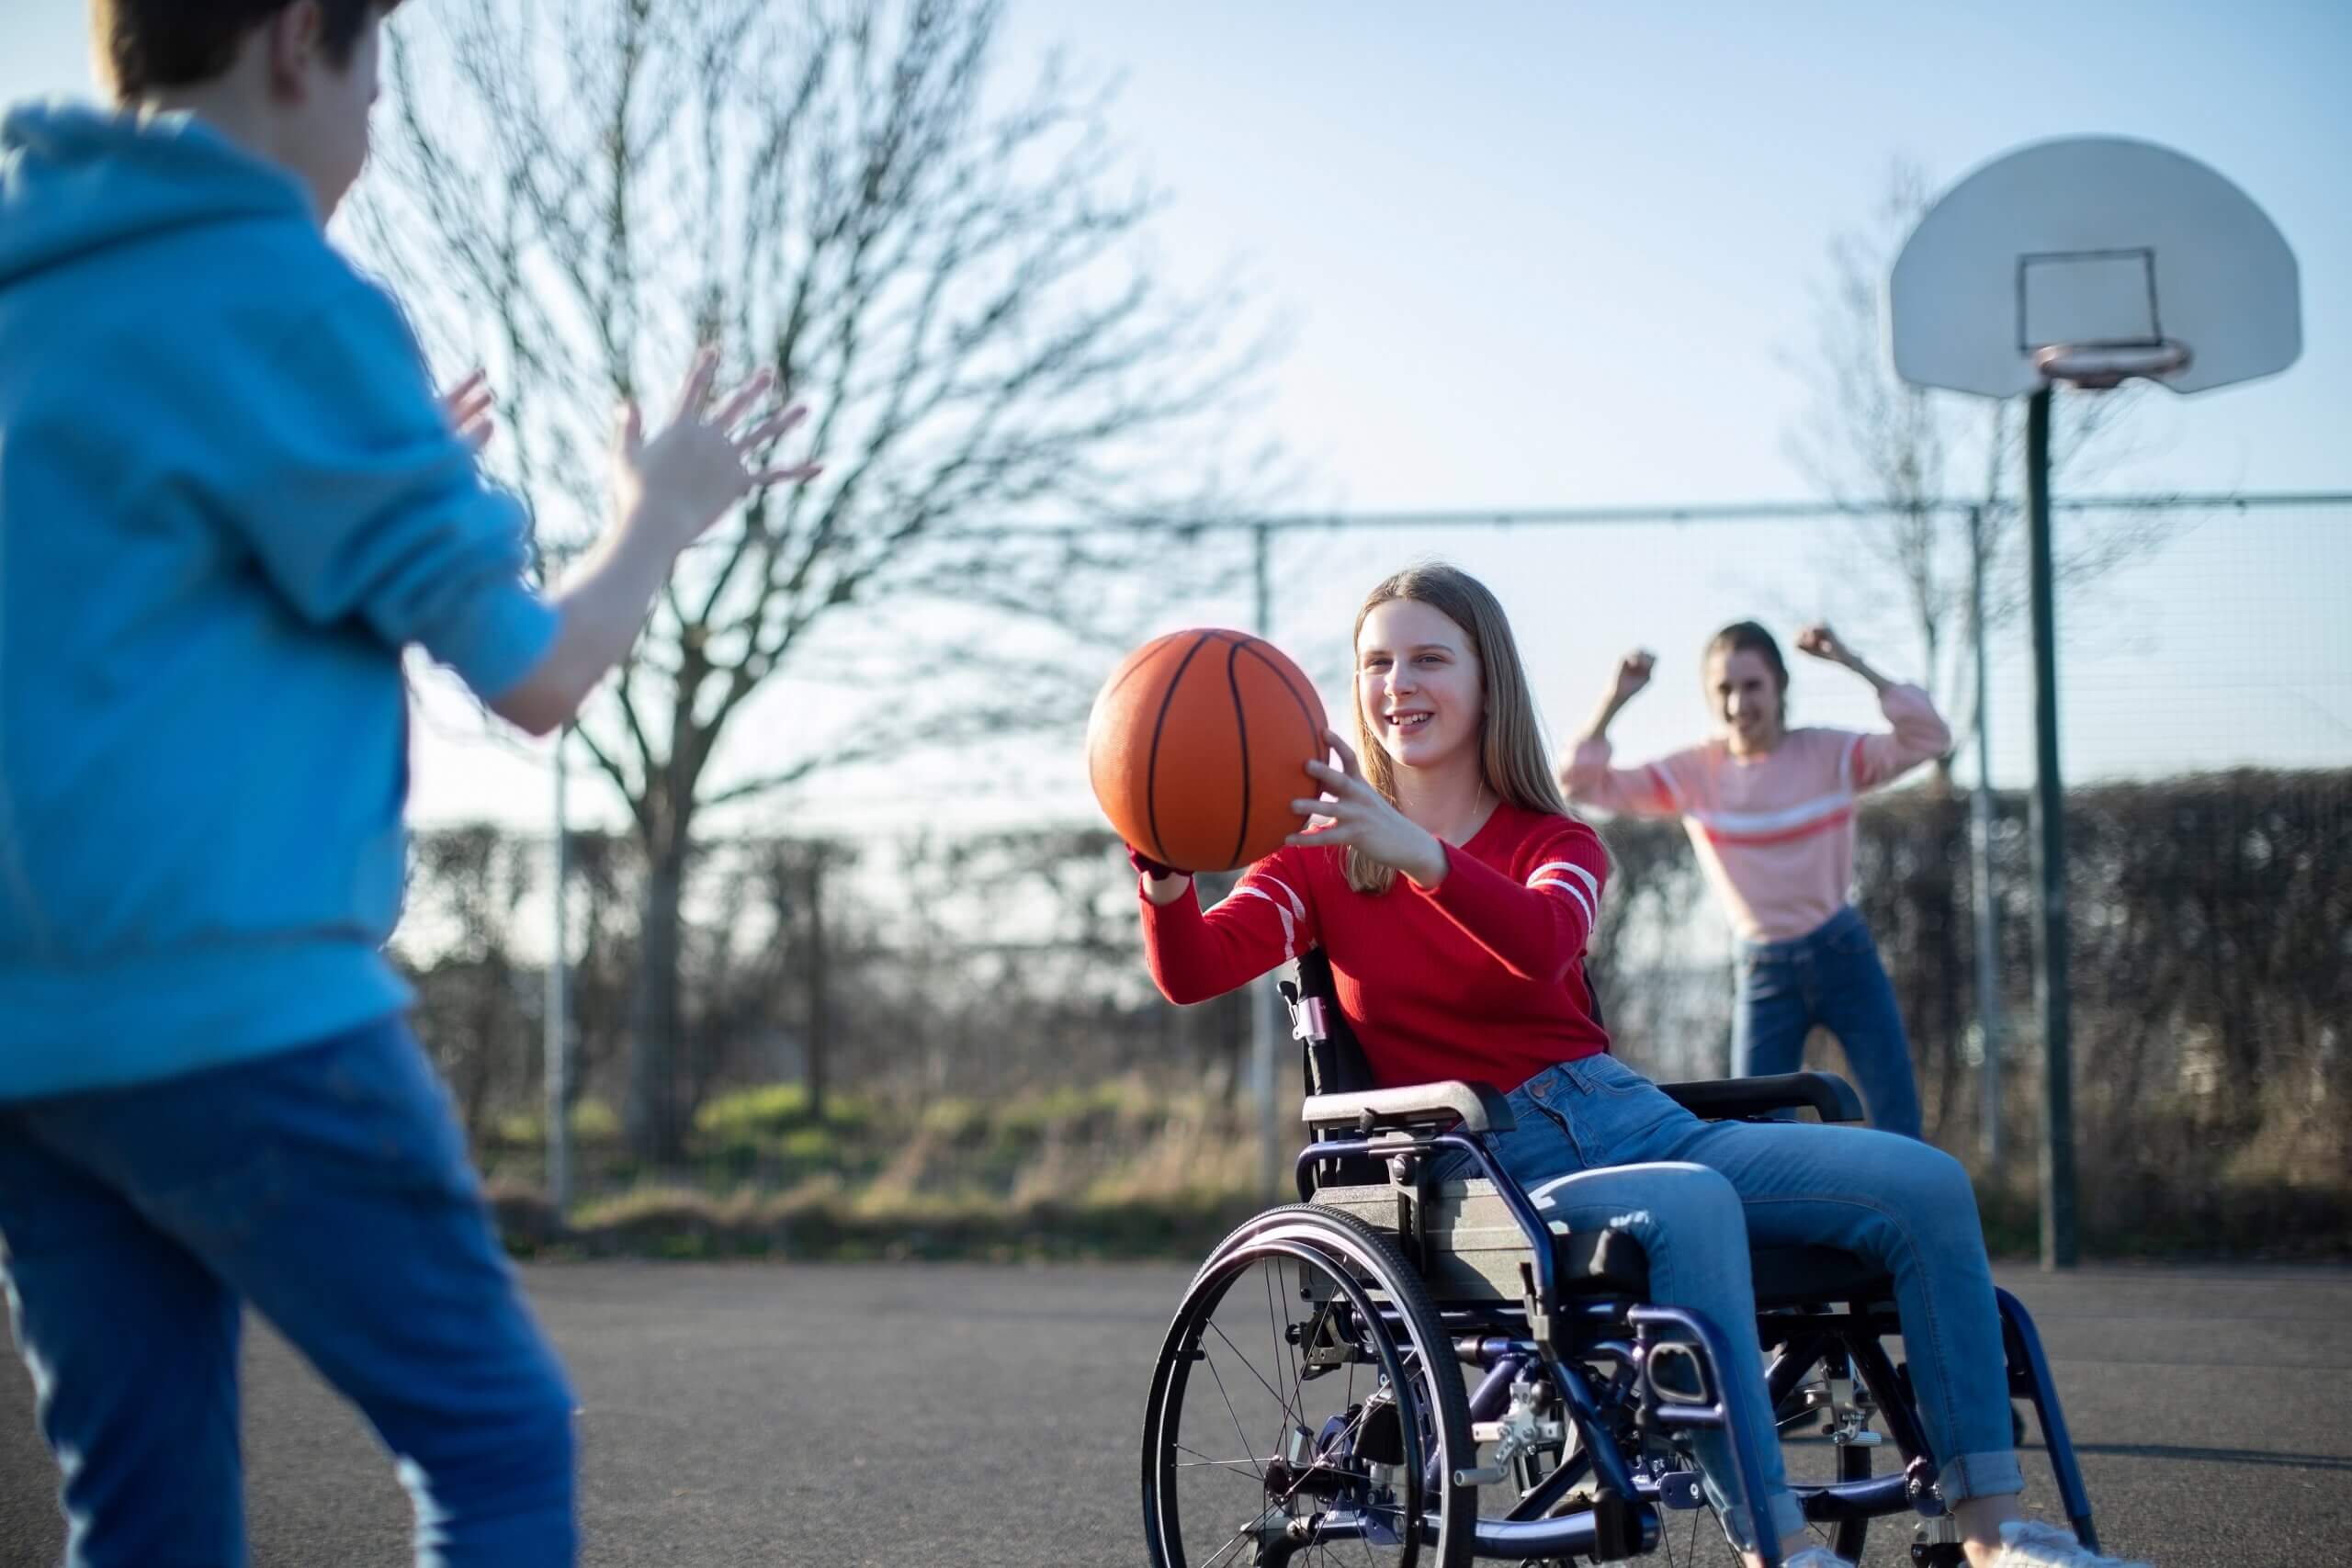 Behinderungen verstehen - Mädchen im Rollstuhl spielt mit anderen Kindern Basketball